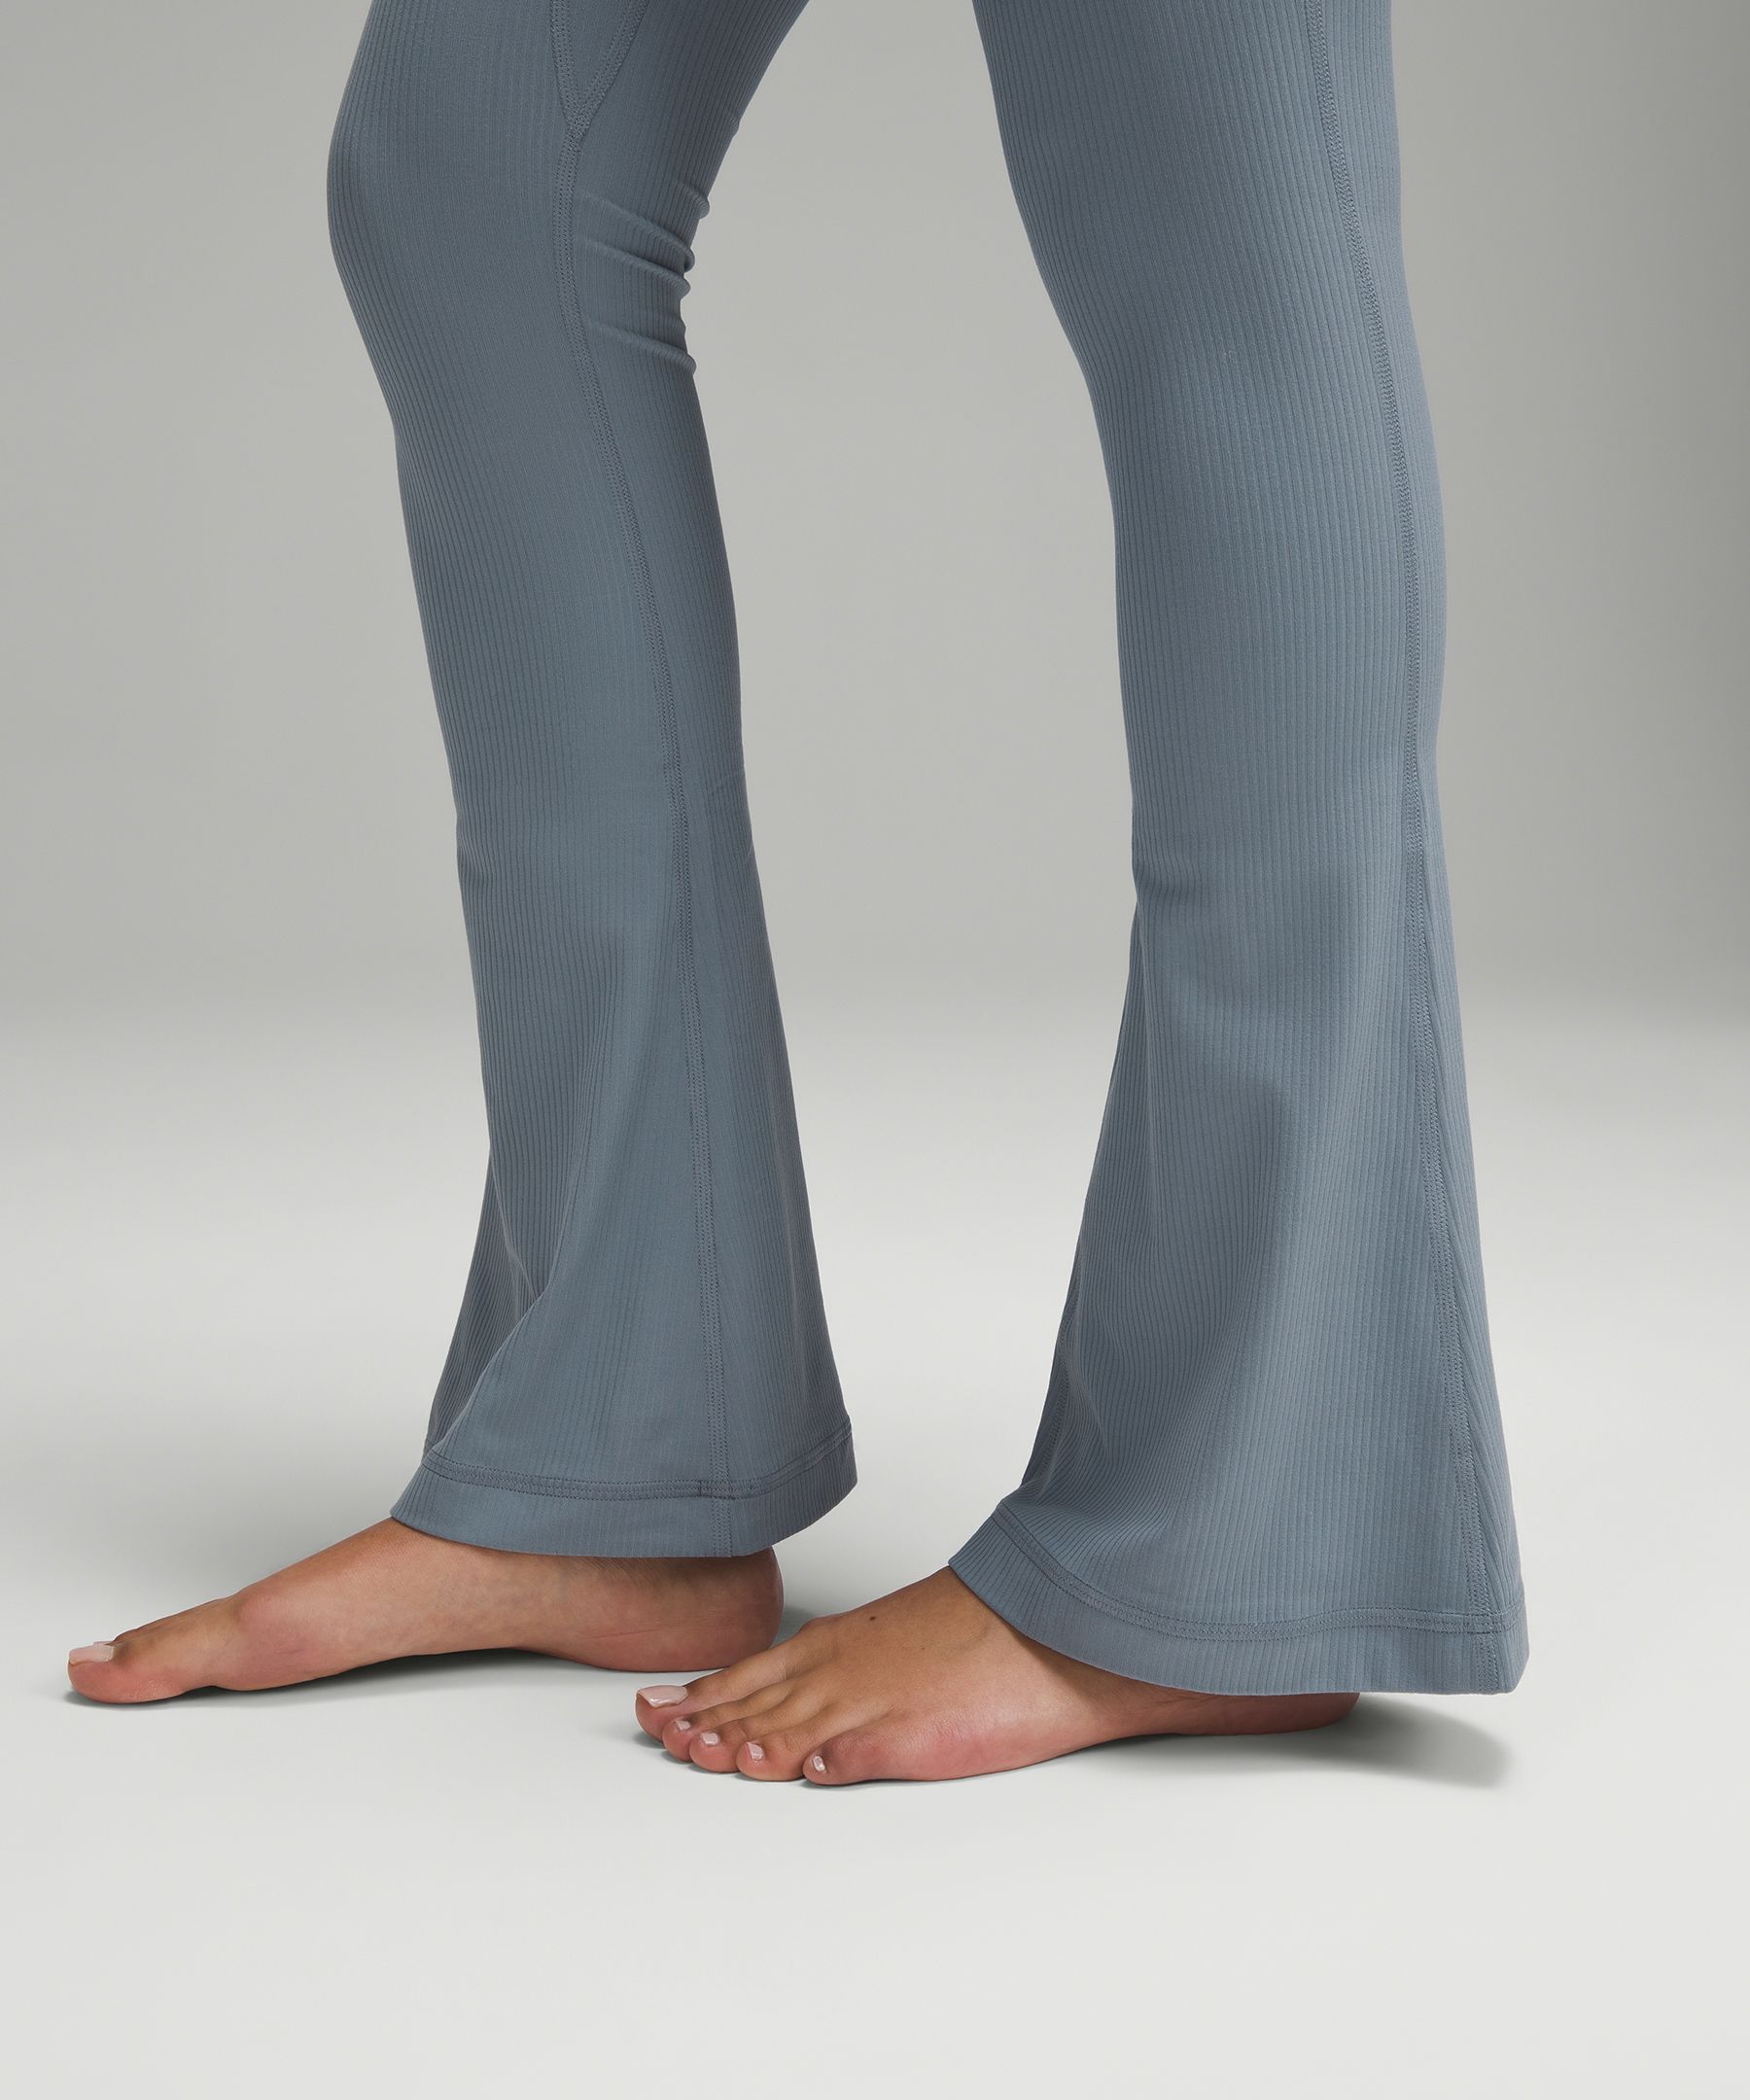 lululemon Align™ High-Rise Mini-Flared Pant *Extra Short